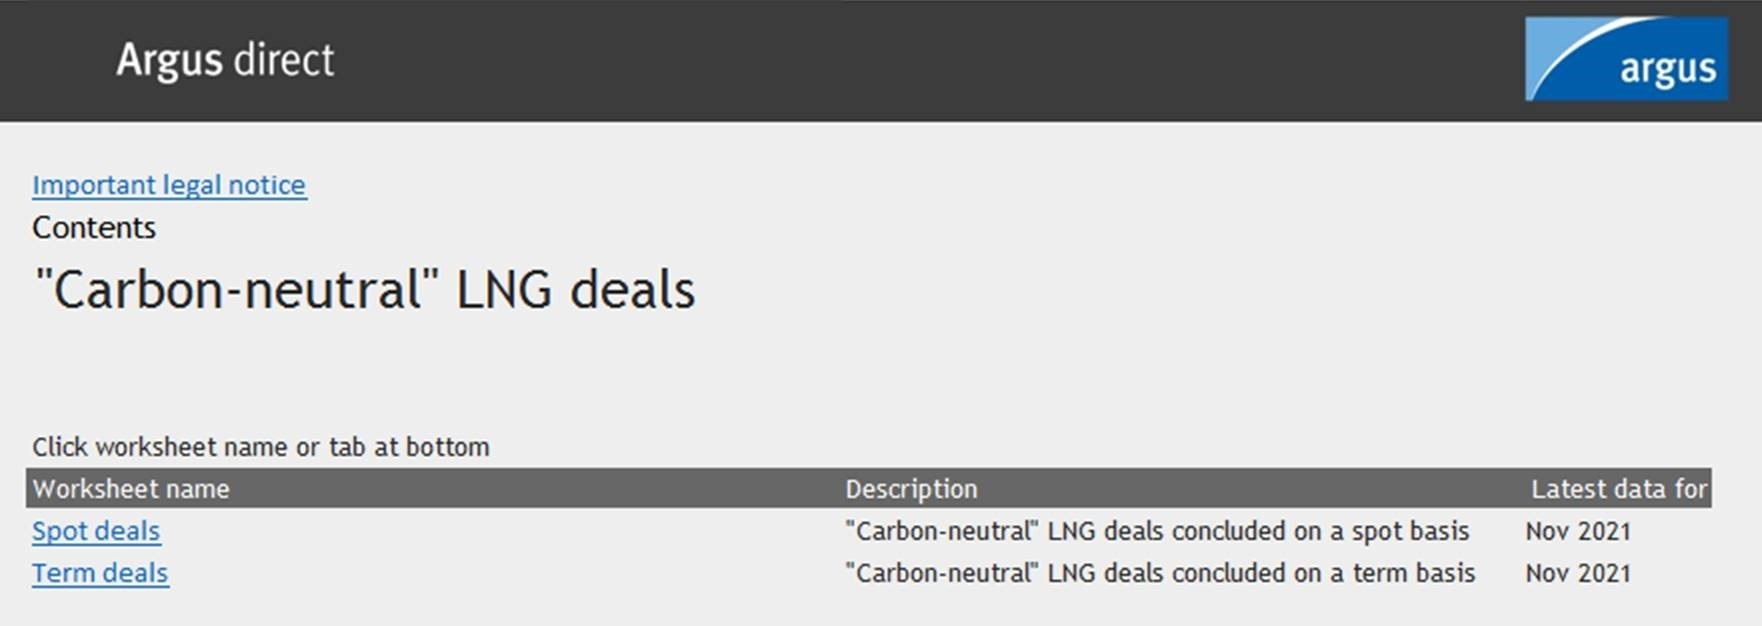 Carbon-neutral LNG deals